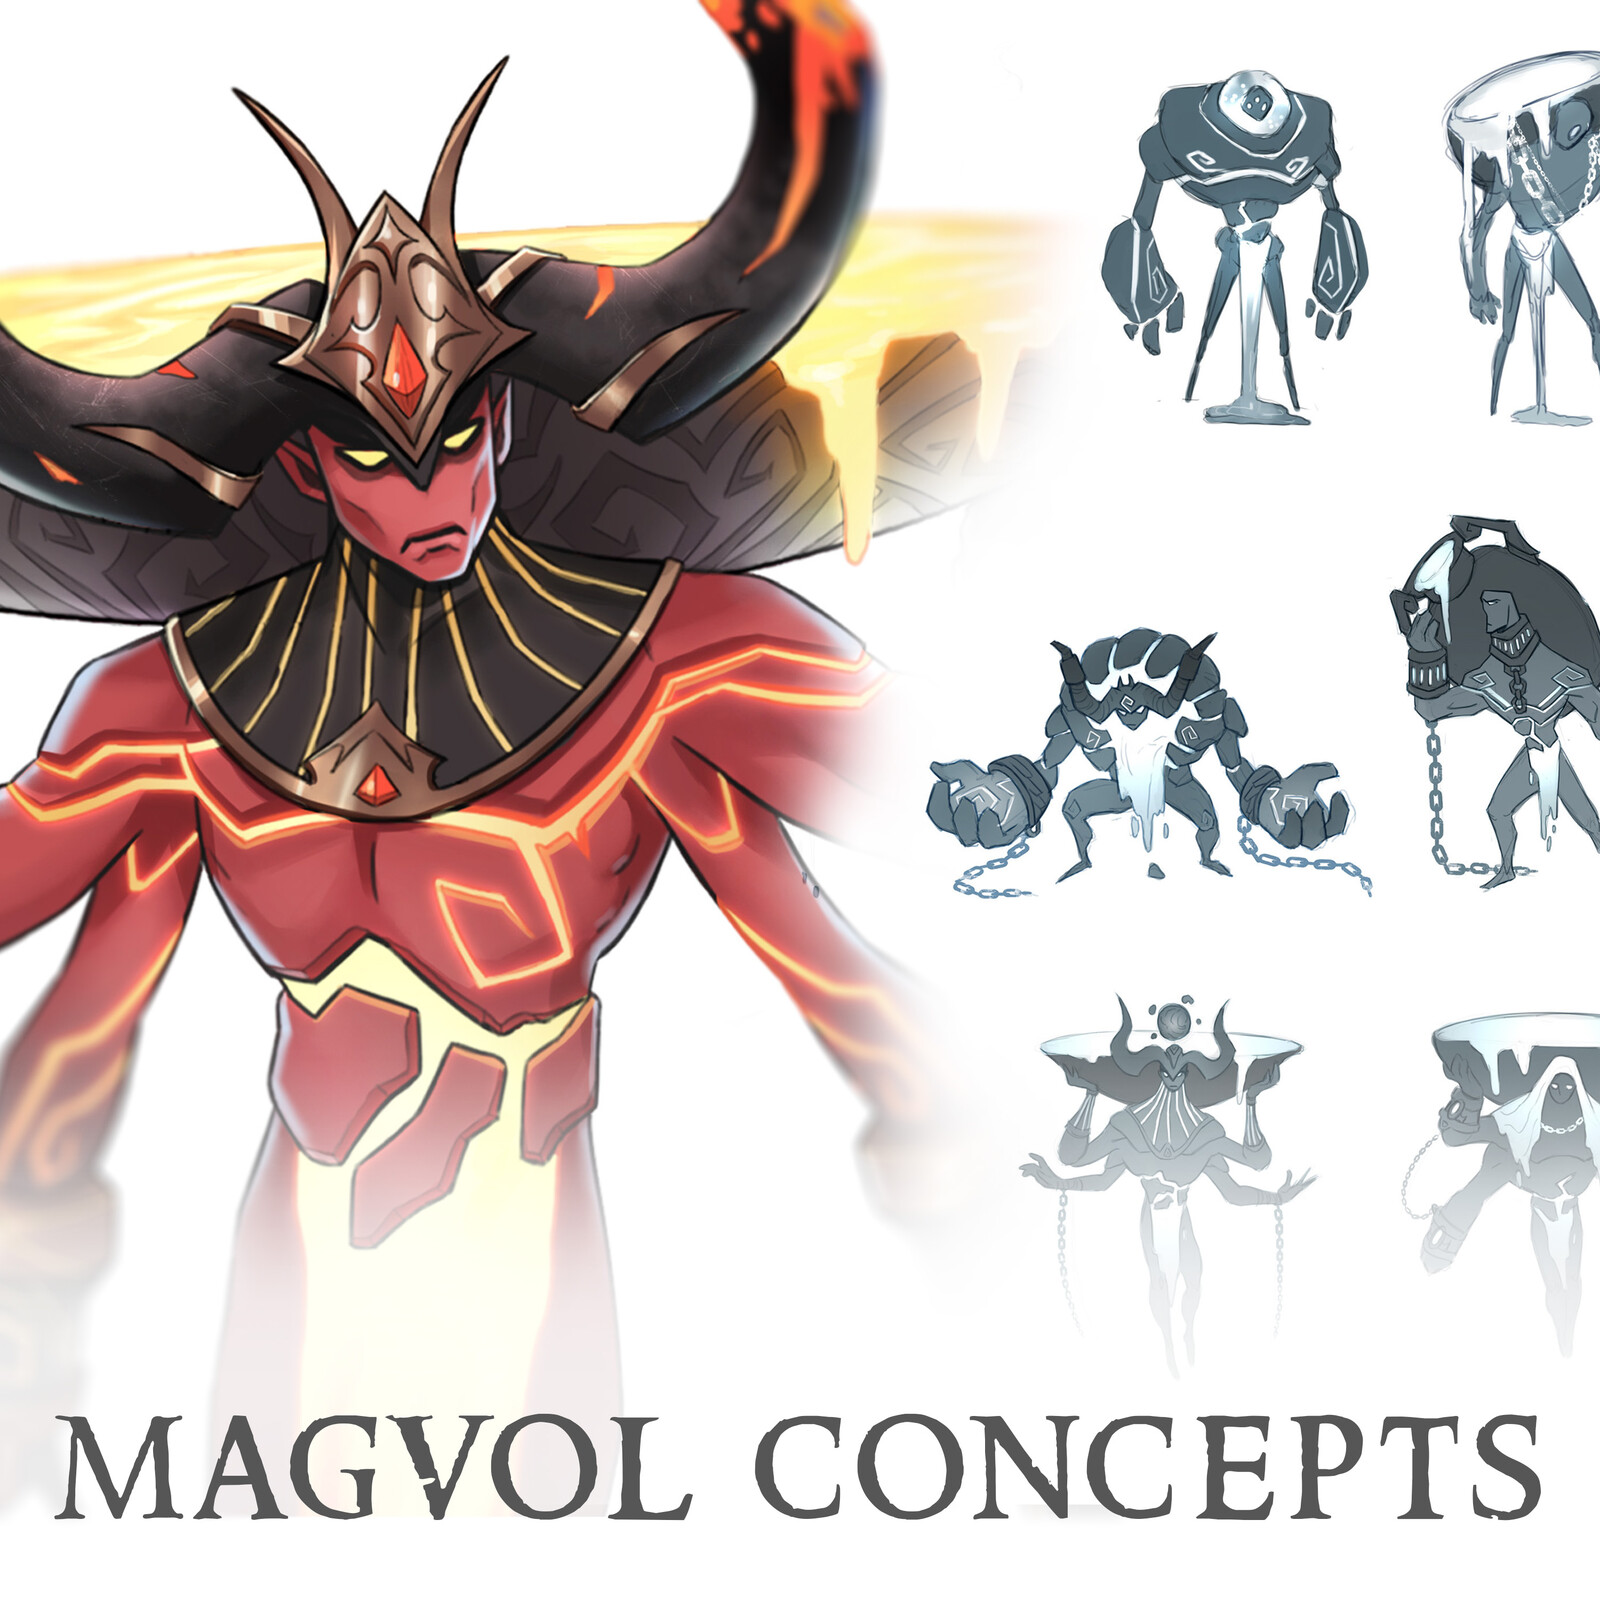 Magvol, the Volcano God